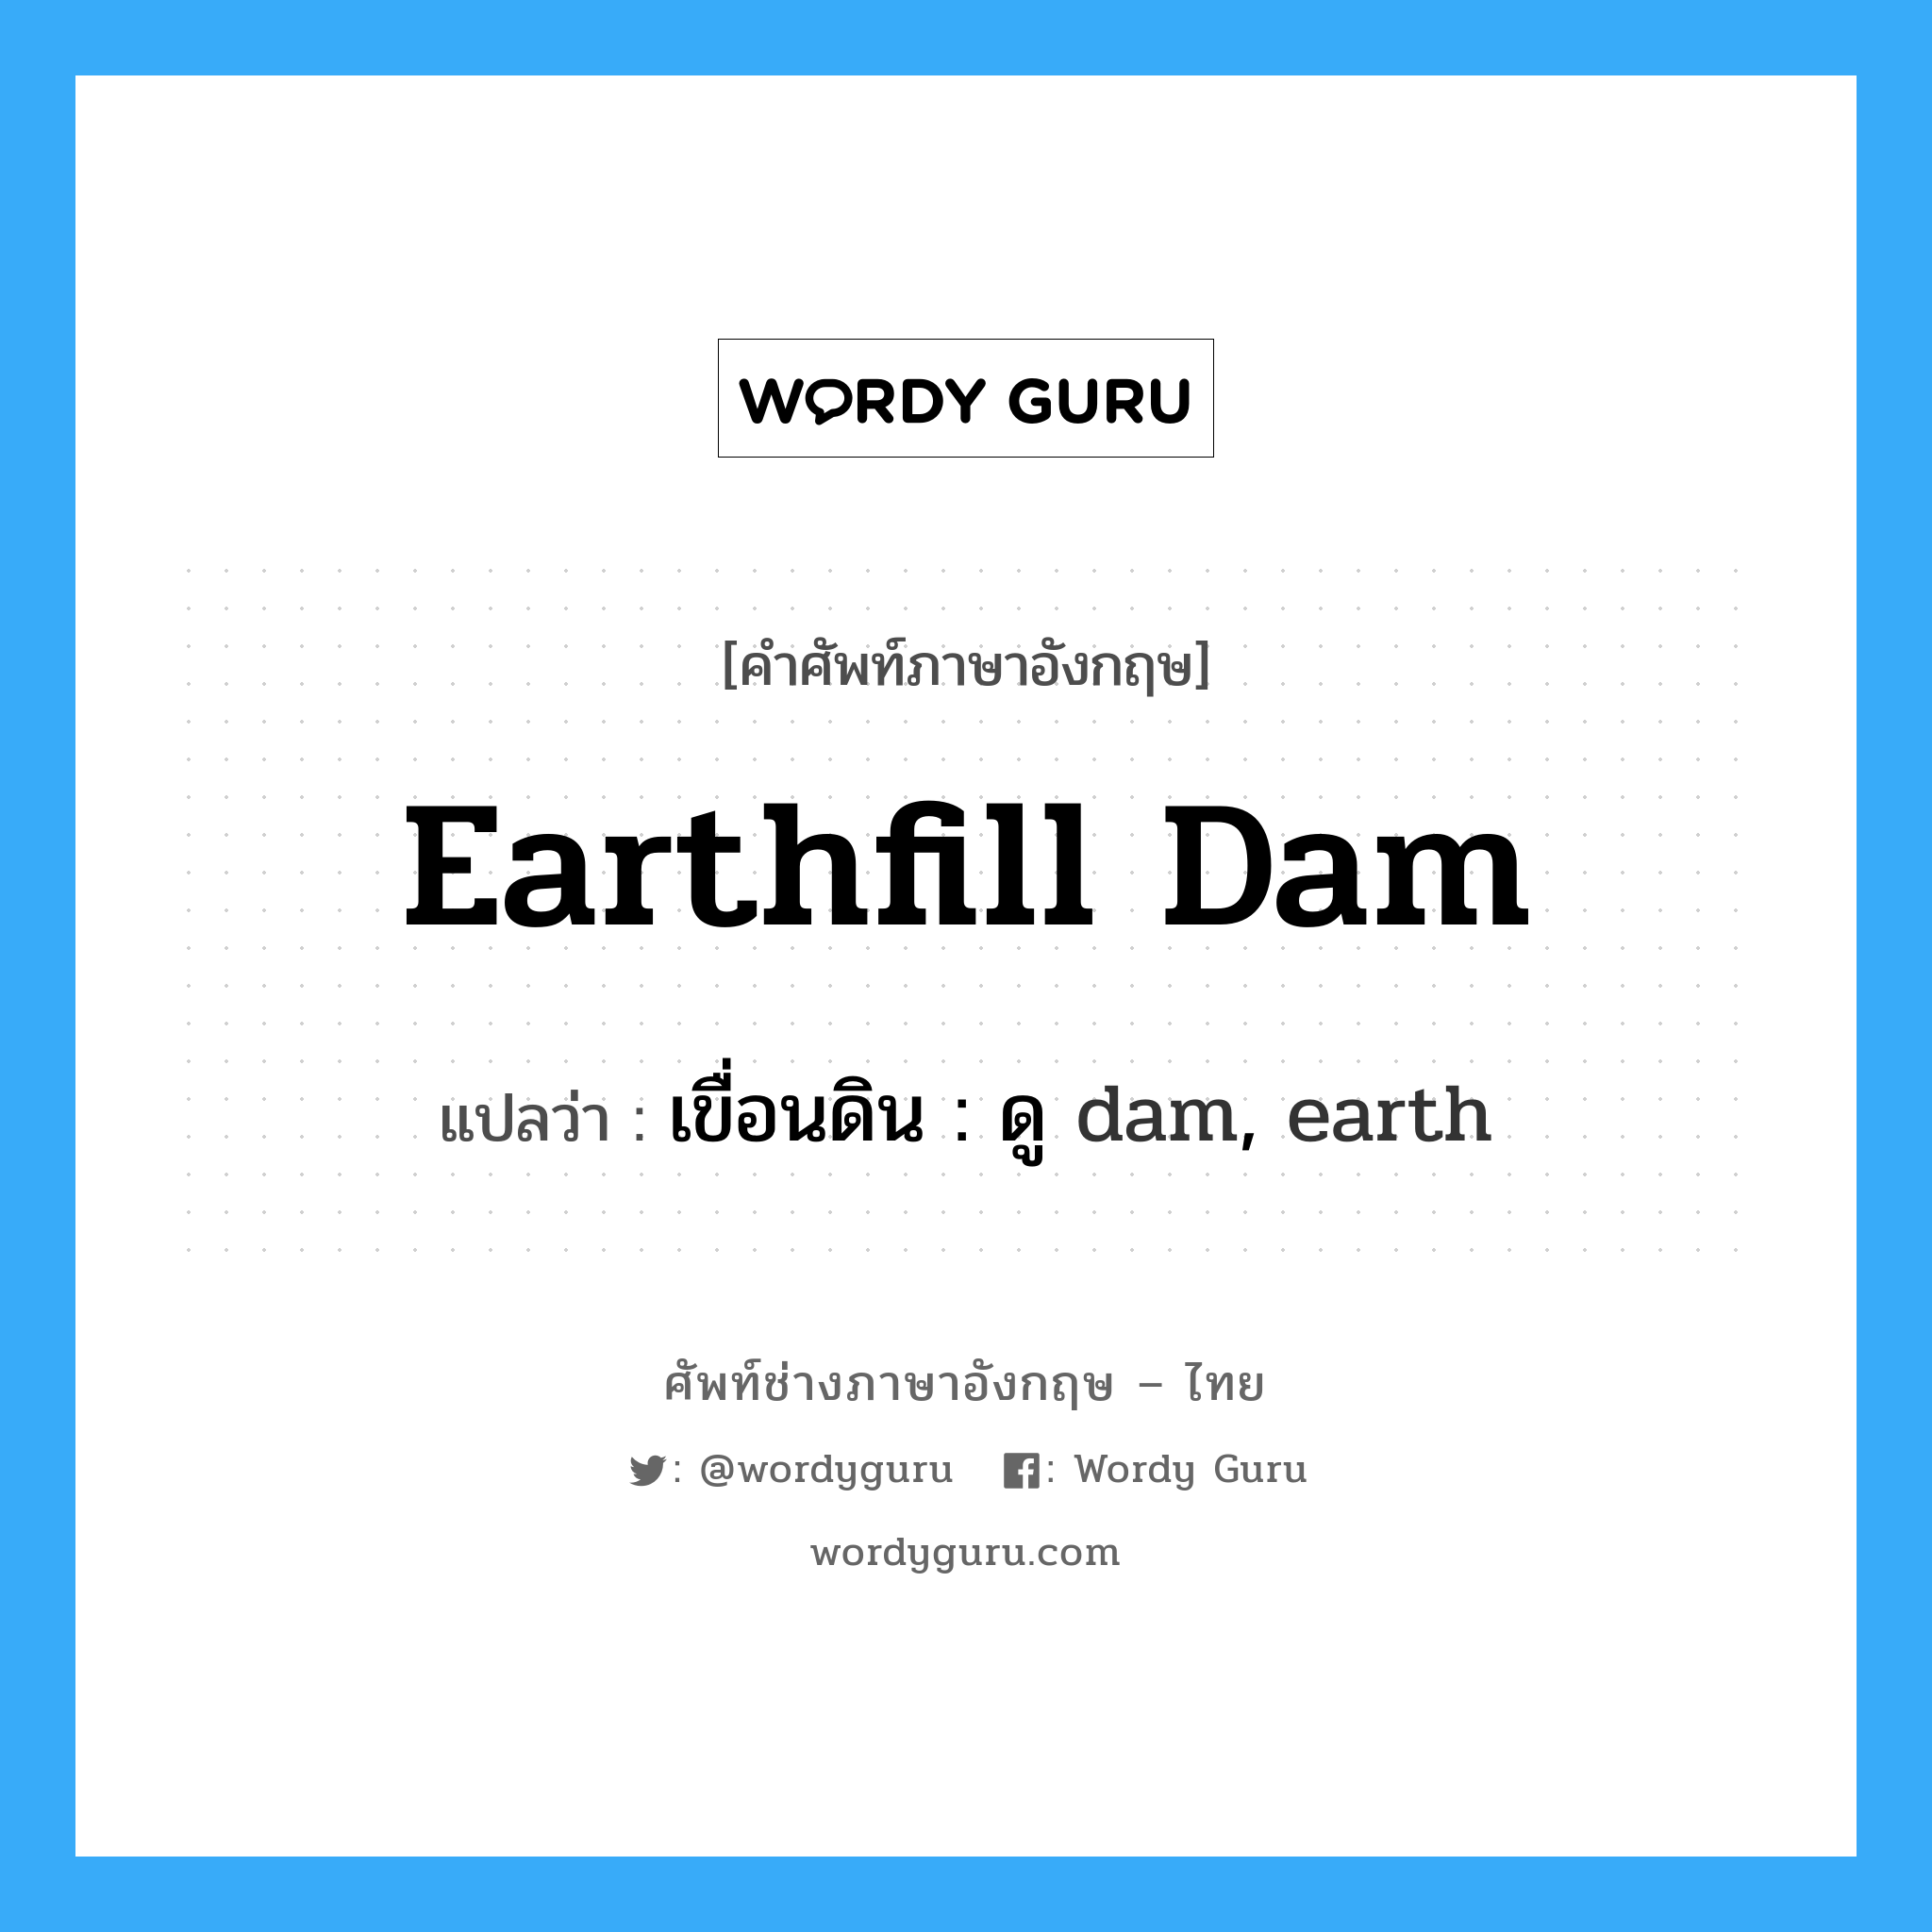 earthfill dam แปลว่า?, คำศัพท์ช่างภาษาอังกฤษ - ไทย earthfill dam คำศัพท์ภาษาอังกฤษ earthfill dam แปลว่า เขื่อนดิน : ดู dam, earth